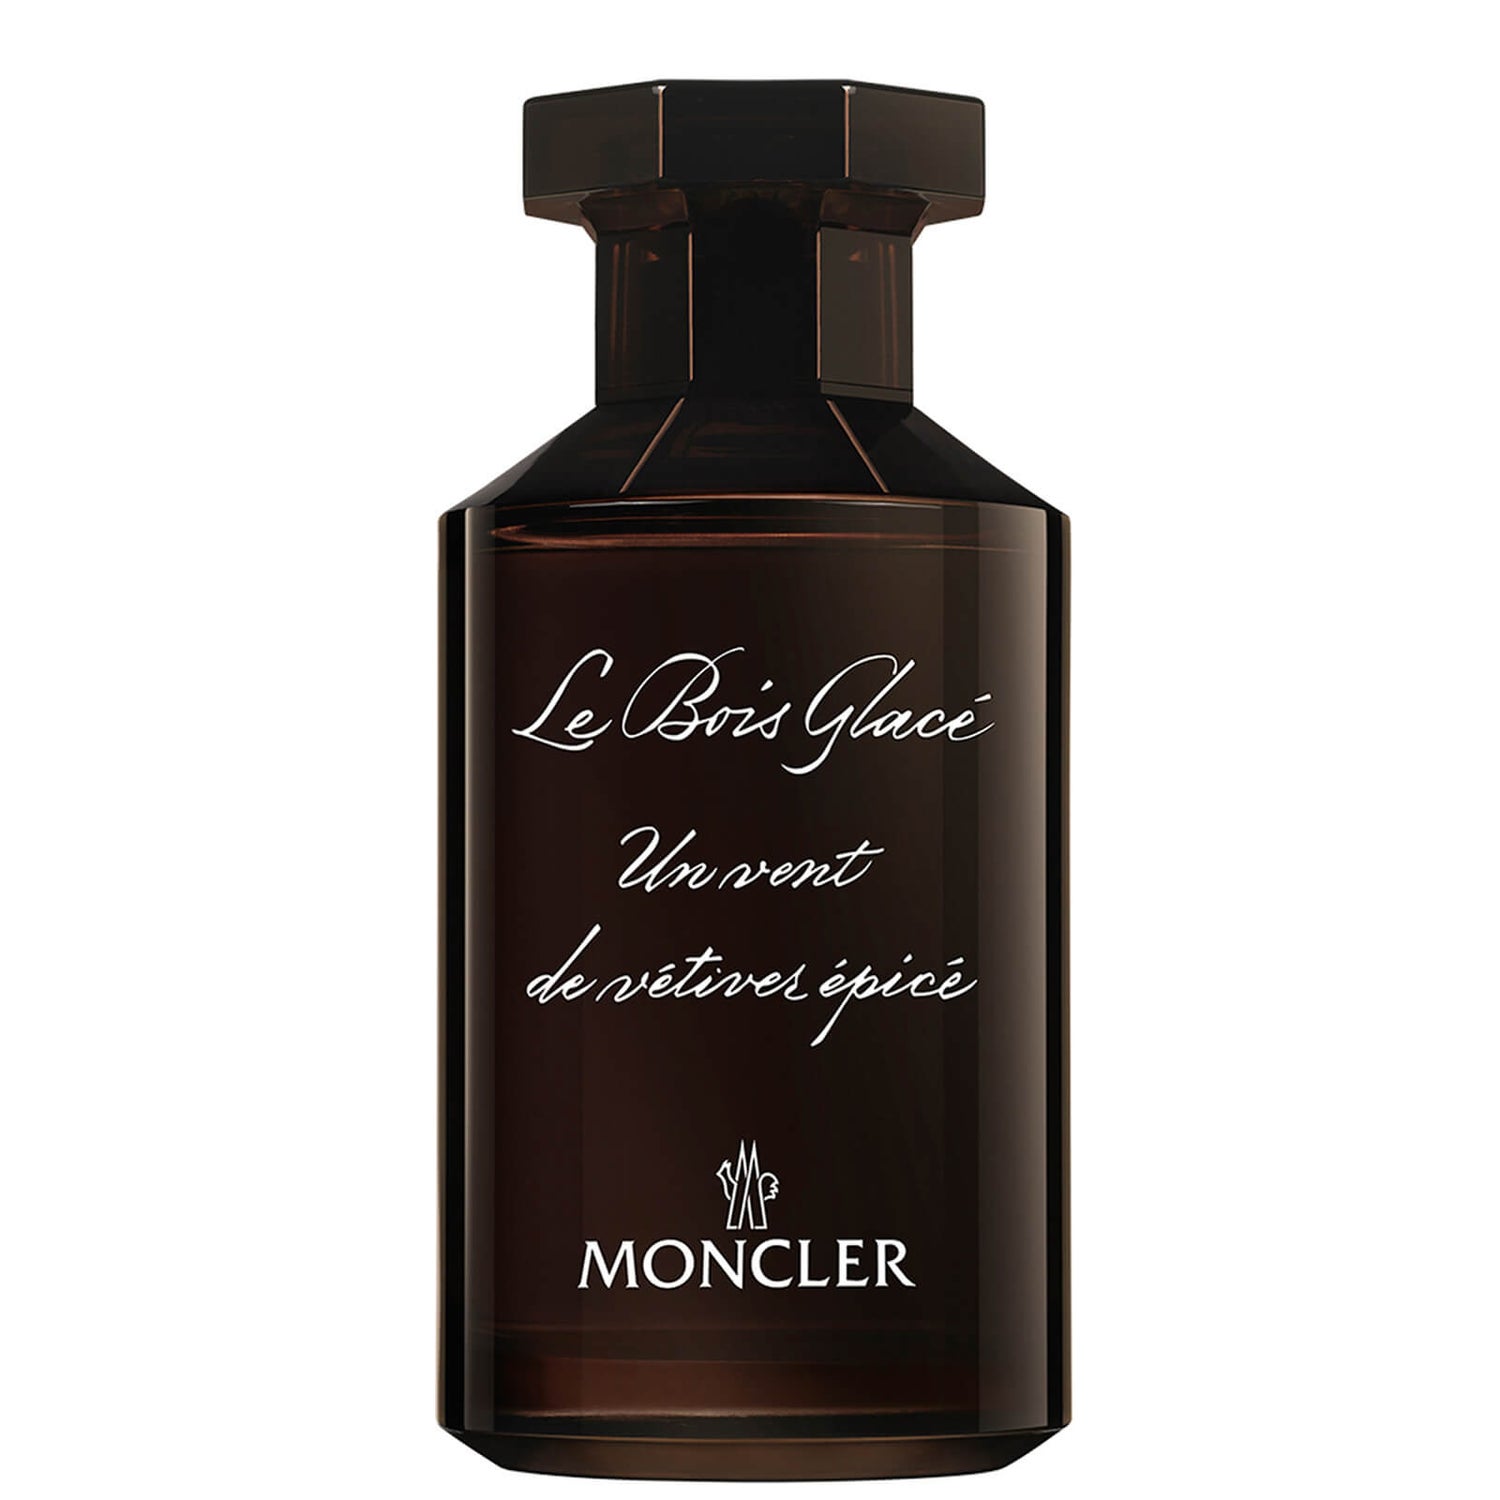 Moncler Les Sommets Collection Le Bois Glace Eau de Parfum 100ml ...